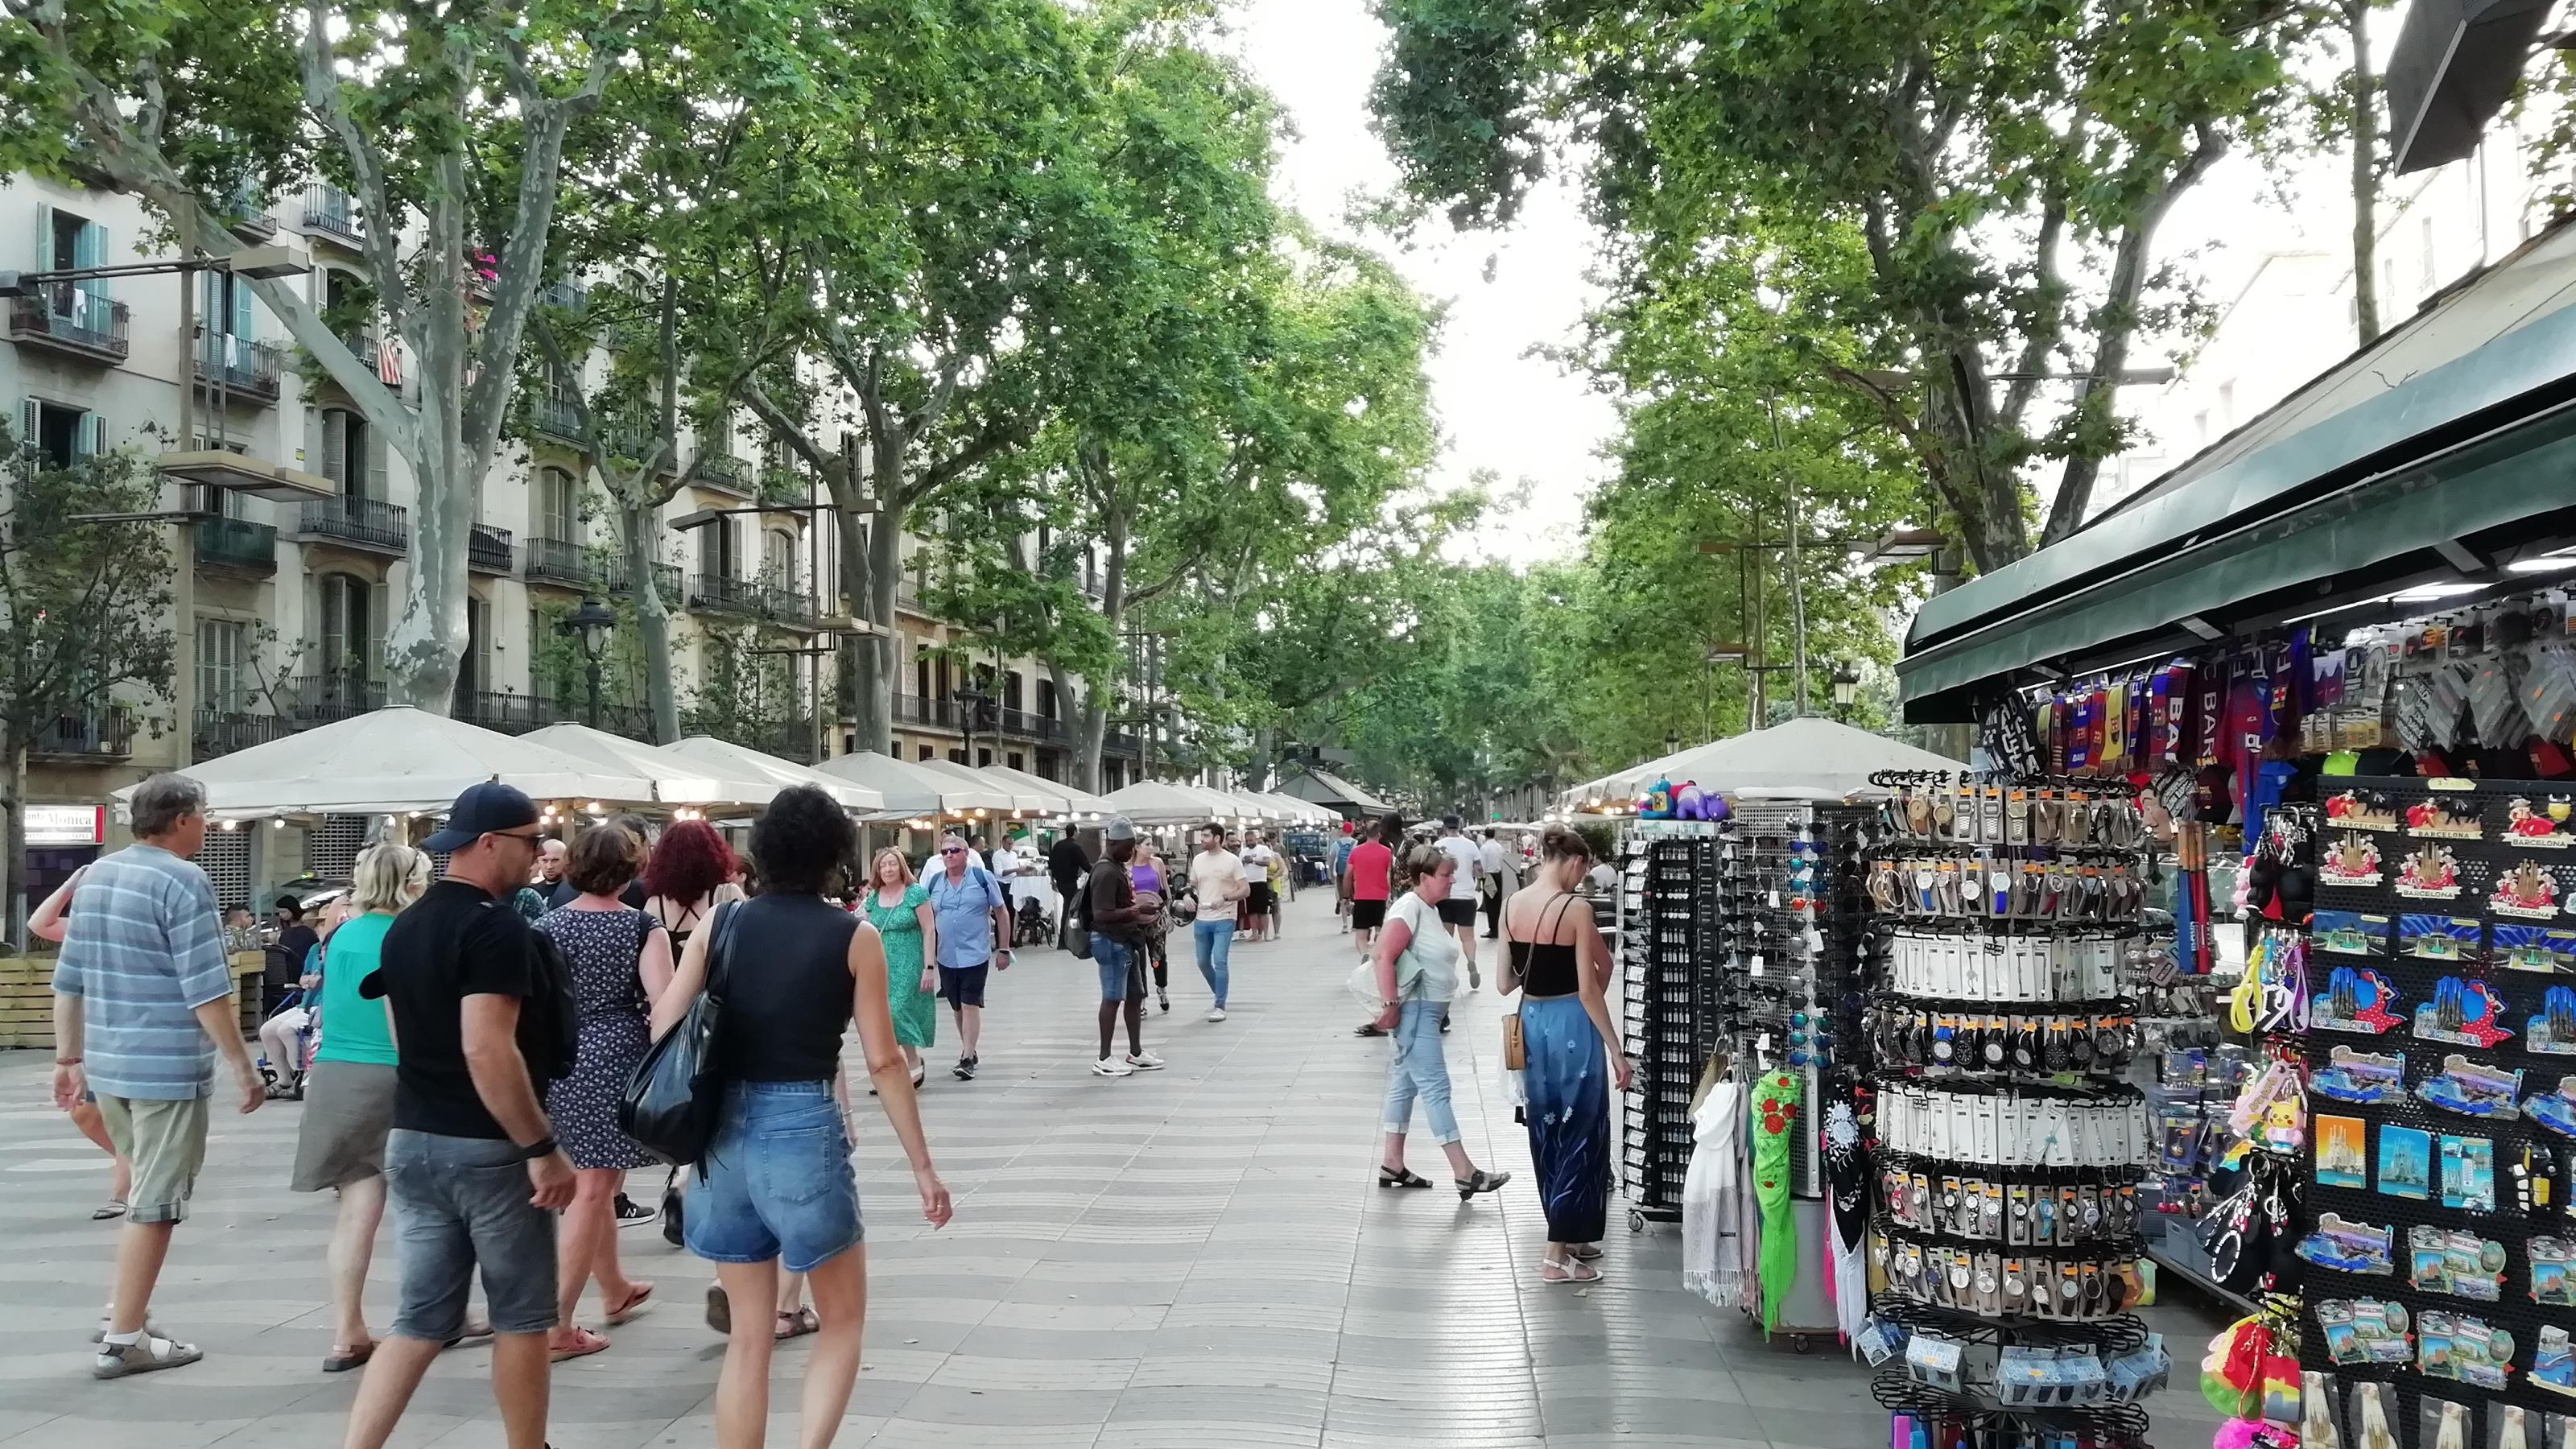 Die Flaniermeile Rambles in Barcelona. An Straßenkiosken werden Souvenirs angeboten.